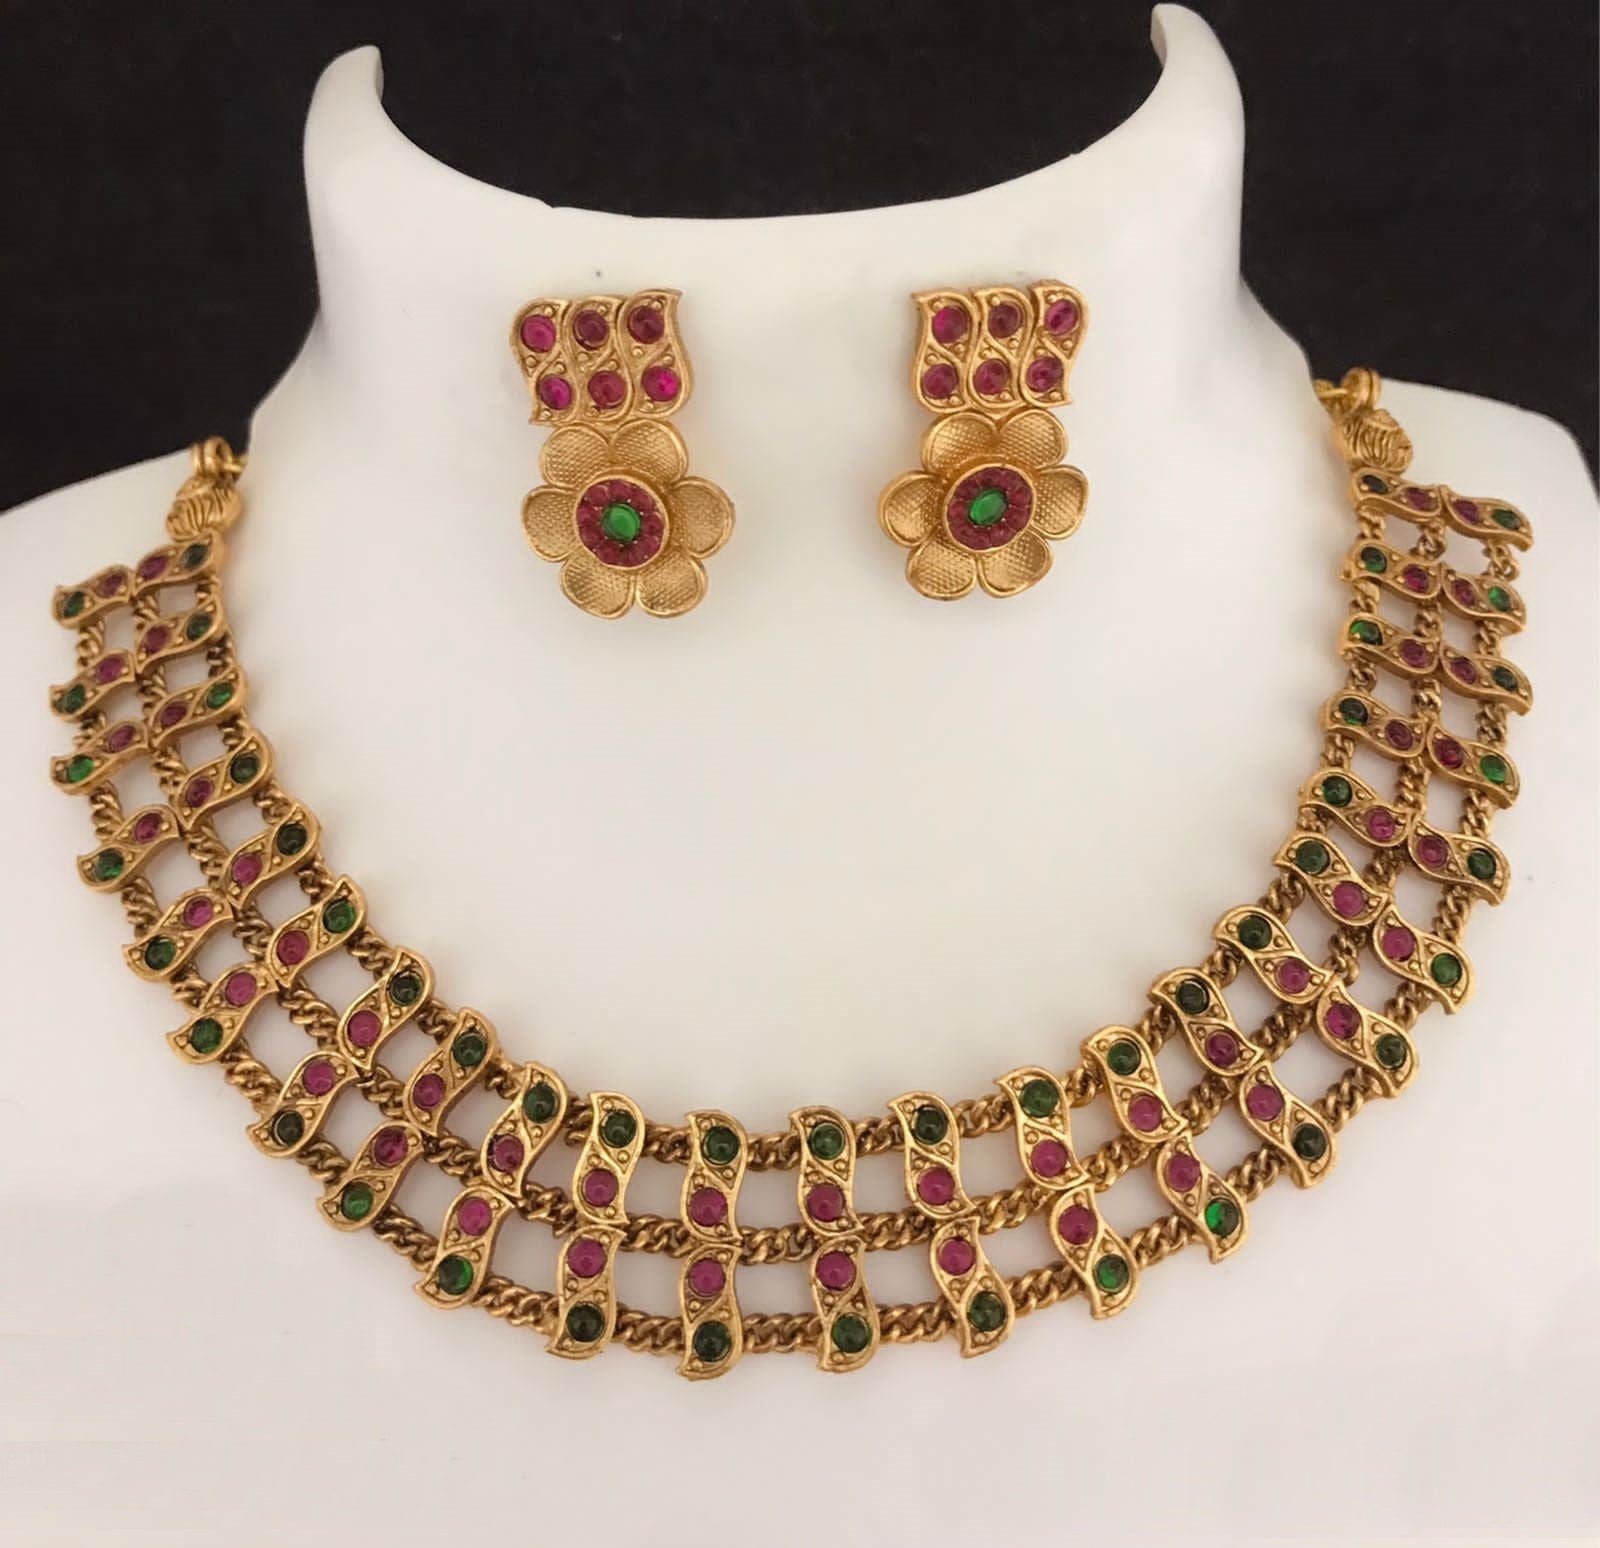 Gold Plated Designer Necklace Set 19516N-1